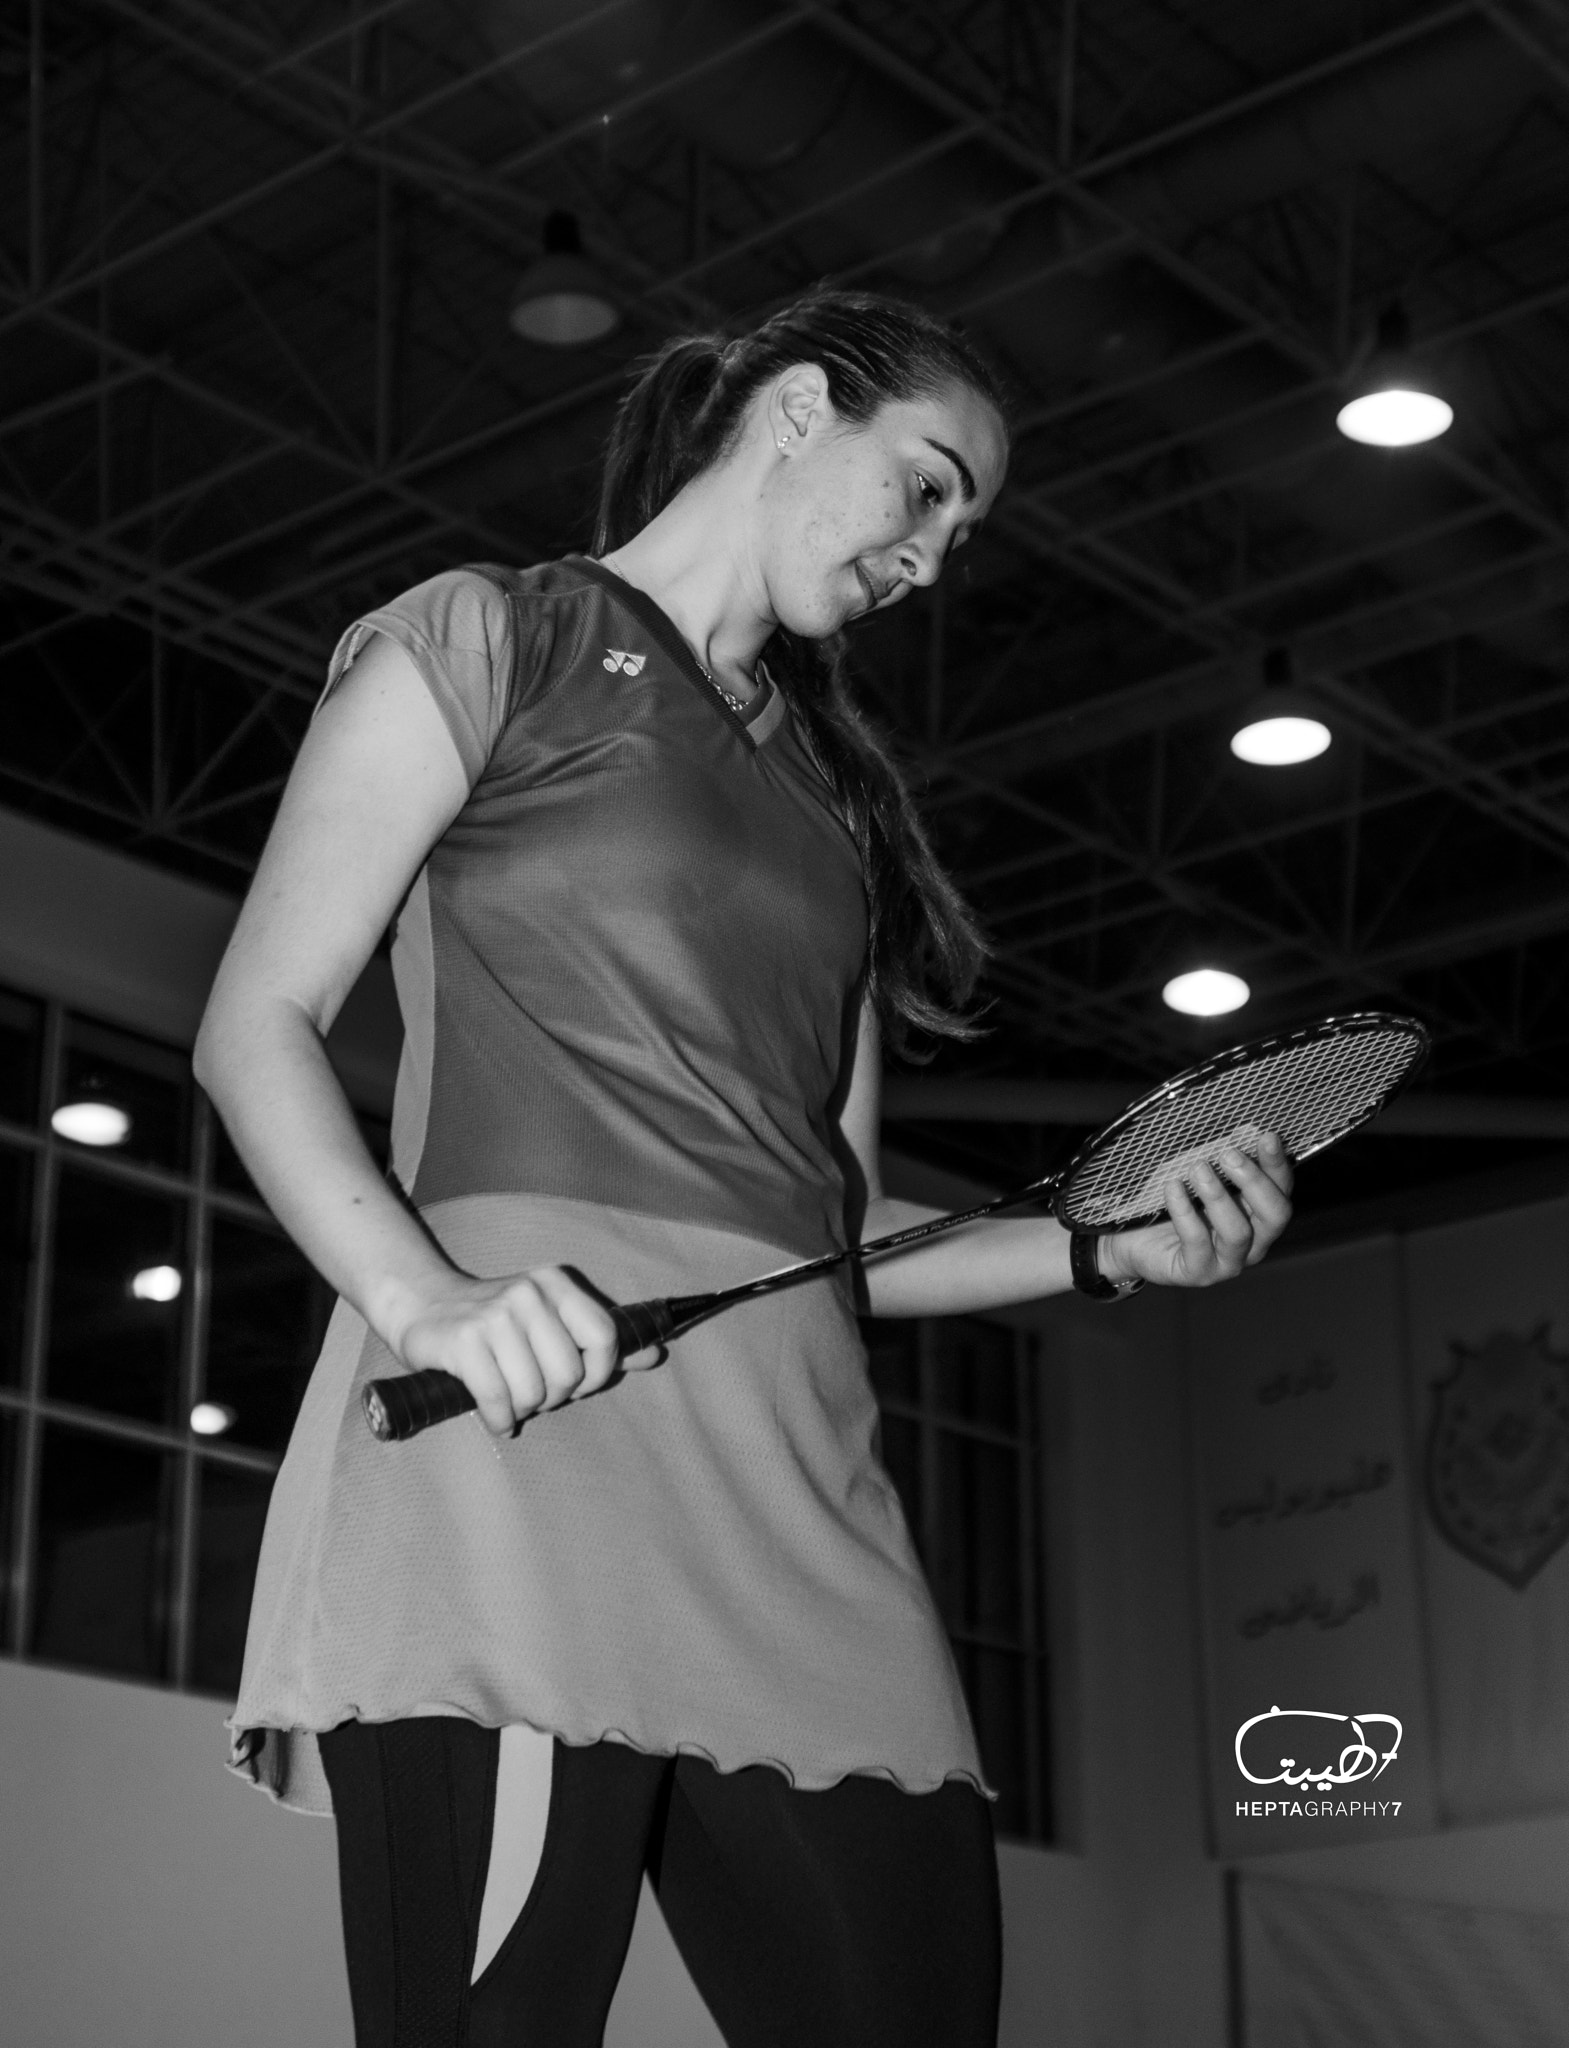 AF Zoom-Nikkor 35-135mm f/3.5-4.5 N sample photo. Badminton champion photography